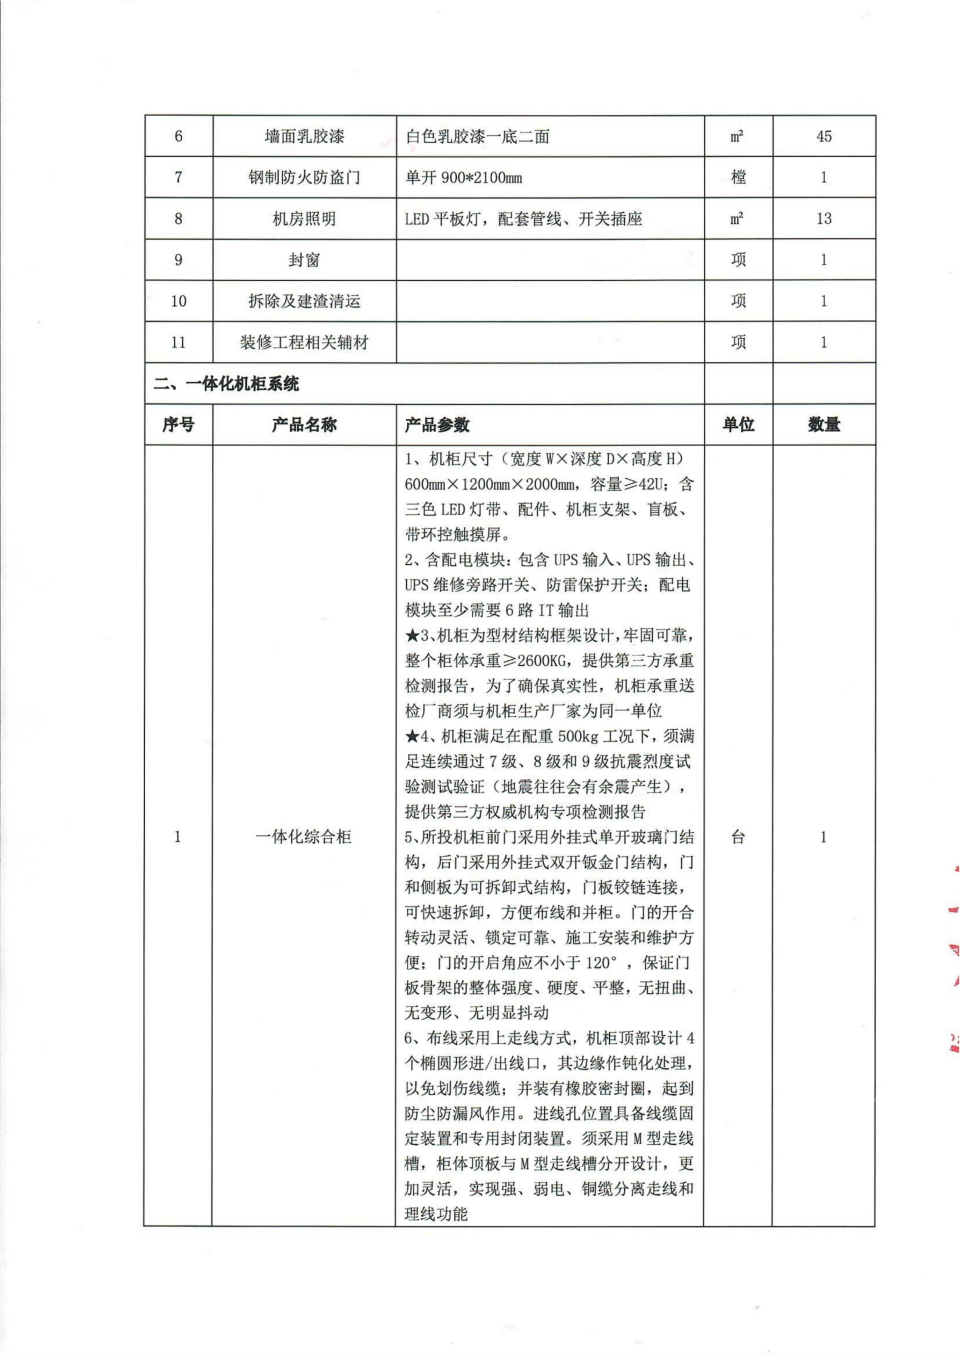 四川省文物考古研究院机房改造项目比选公告_01.png